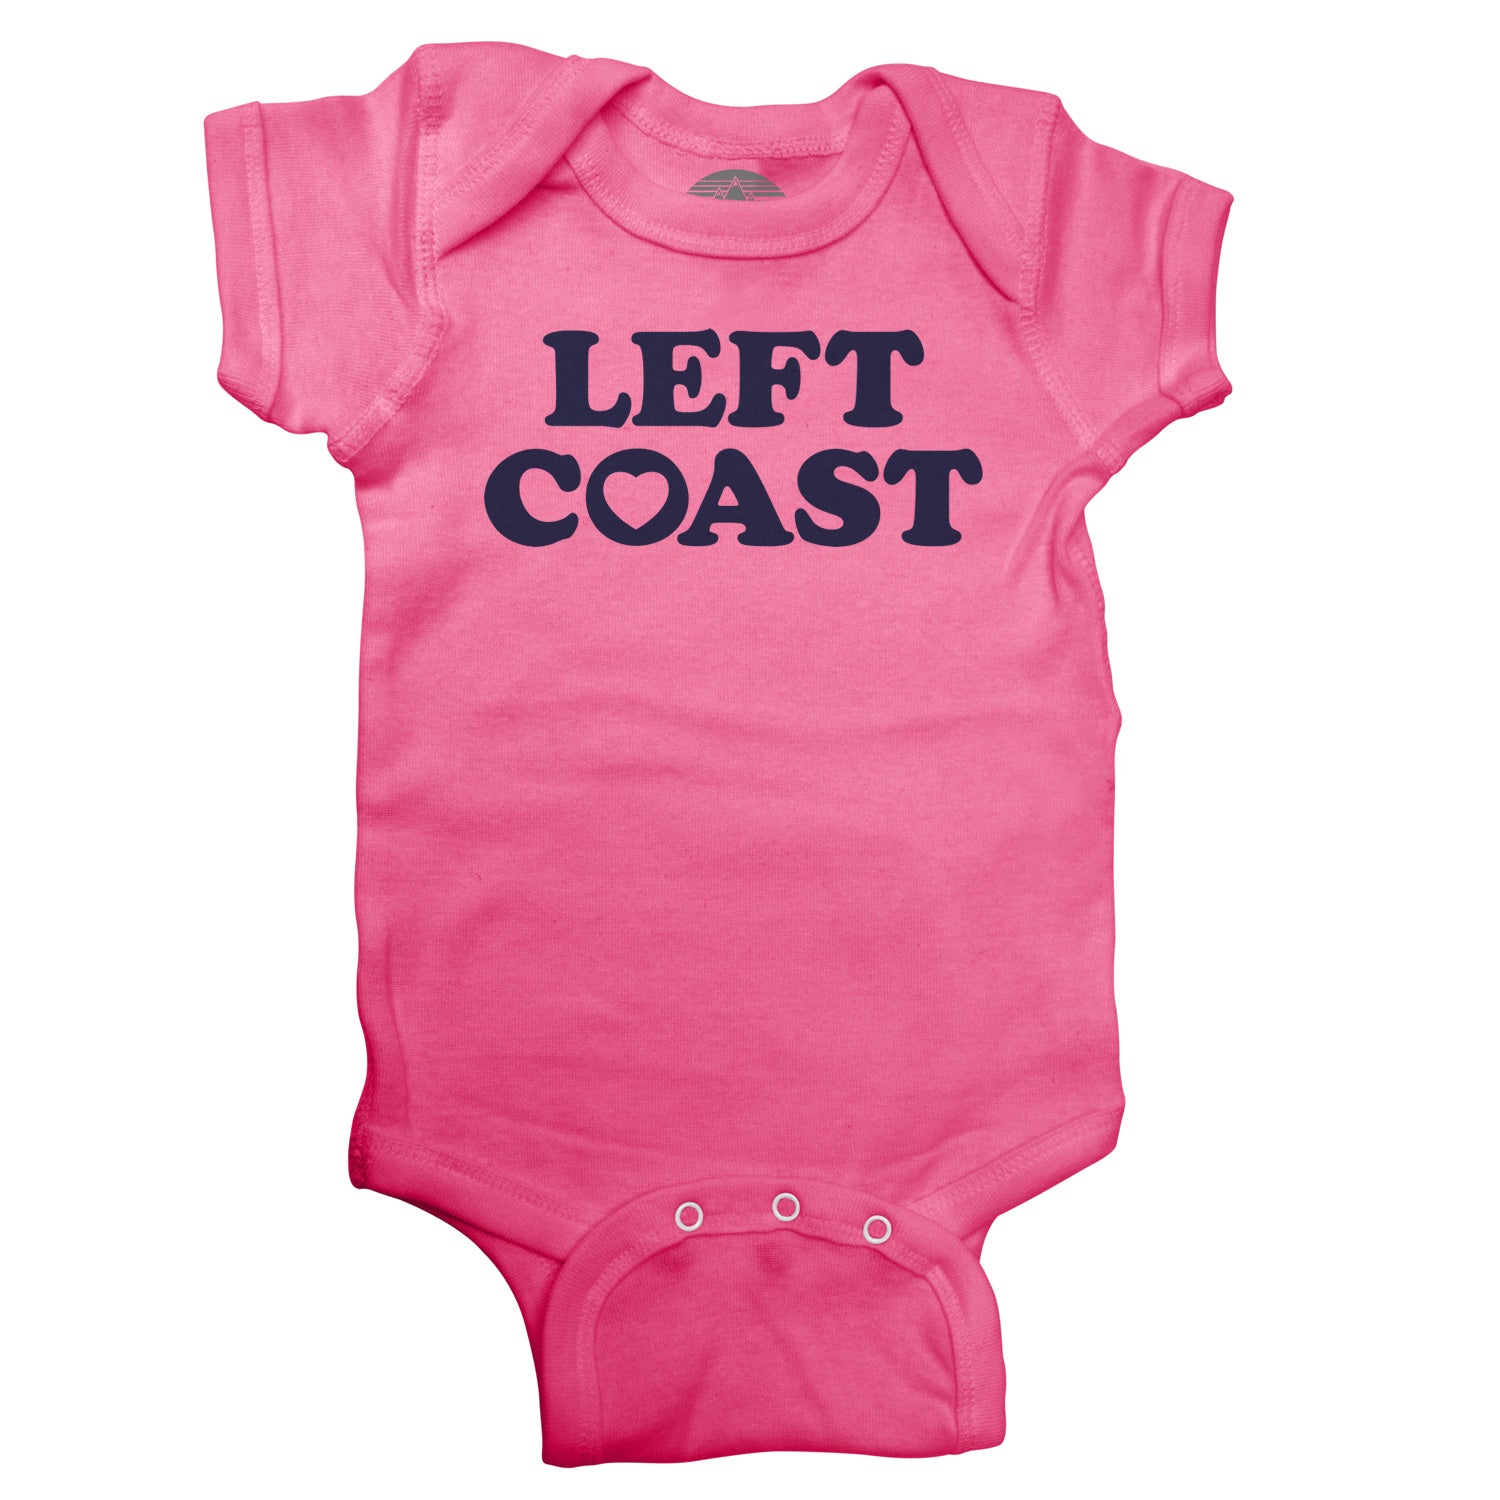 Left Coast Infant Bodysuit - Unisex Fit